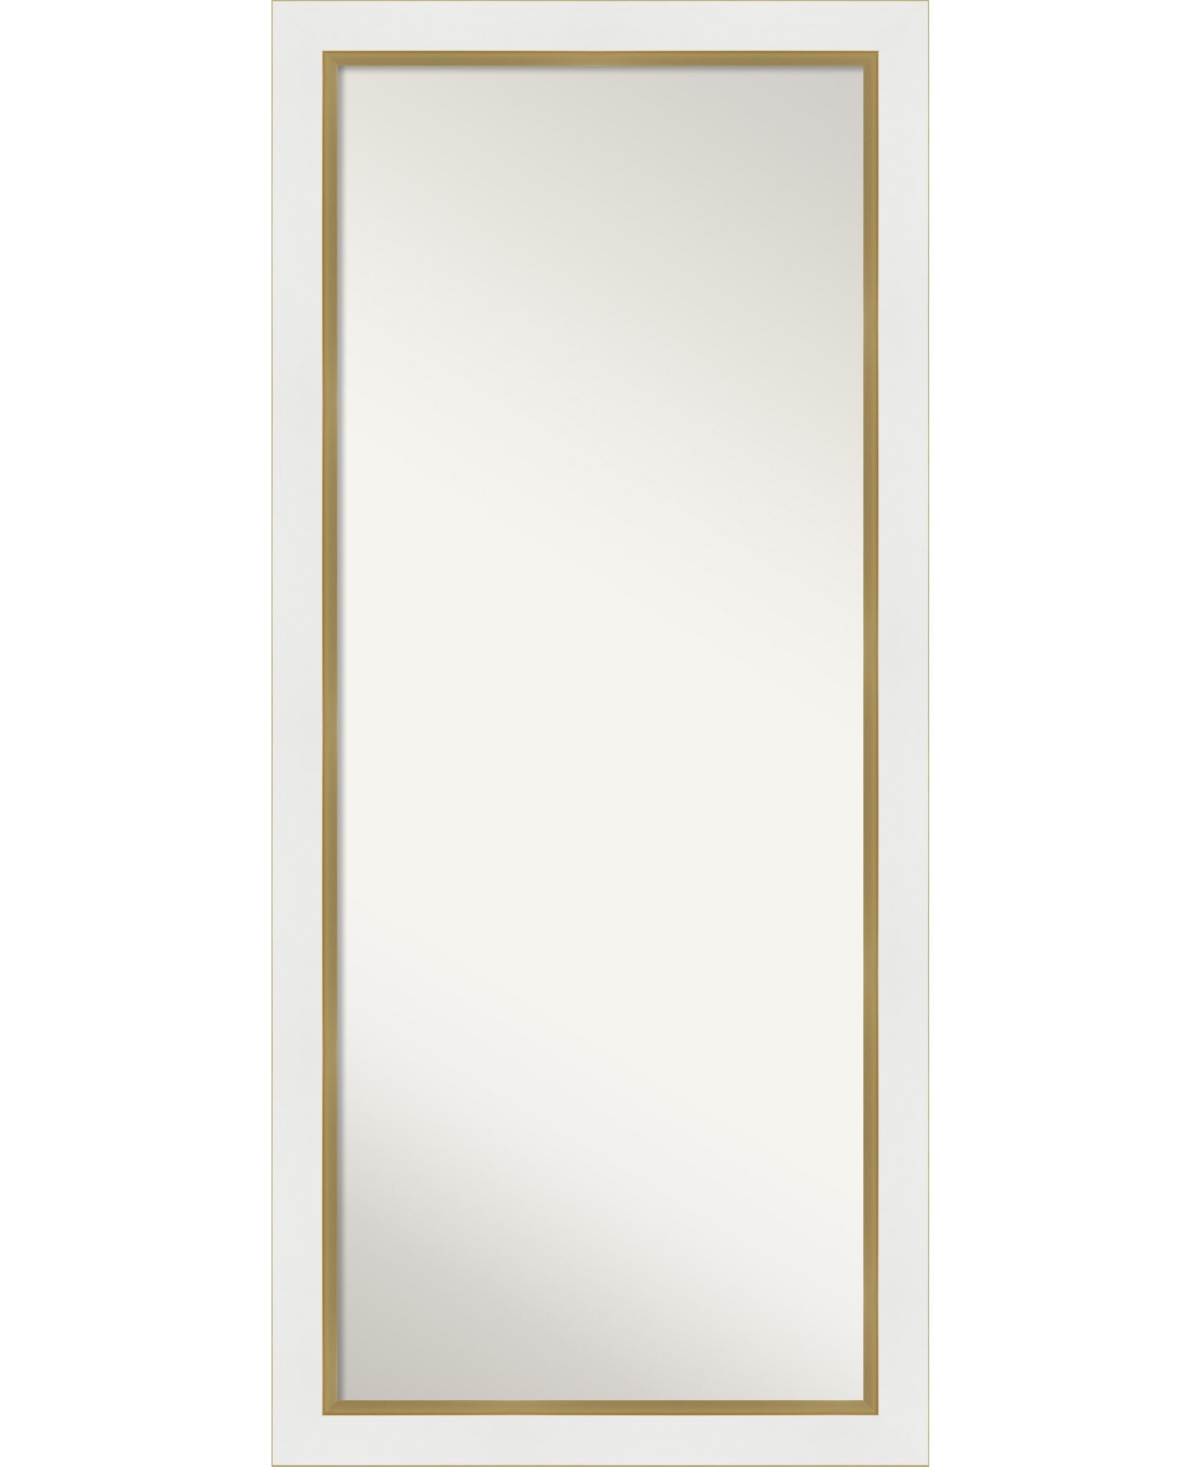 Eva Gold-tone Framed Floor/Leaner Full Length Mirror, 29.25" x 65.25" - White